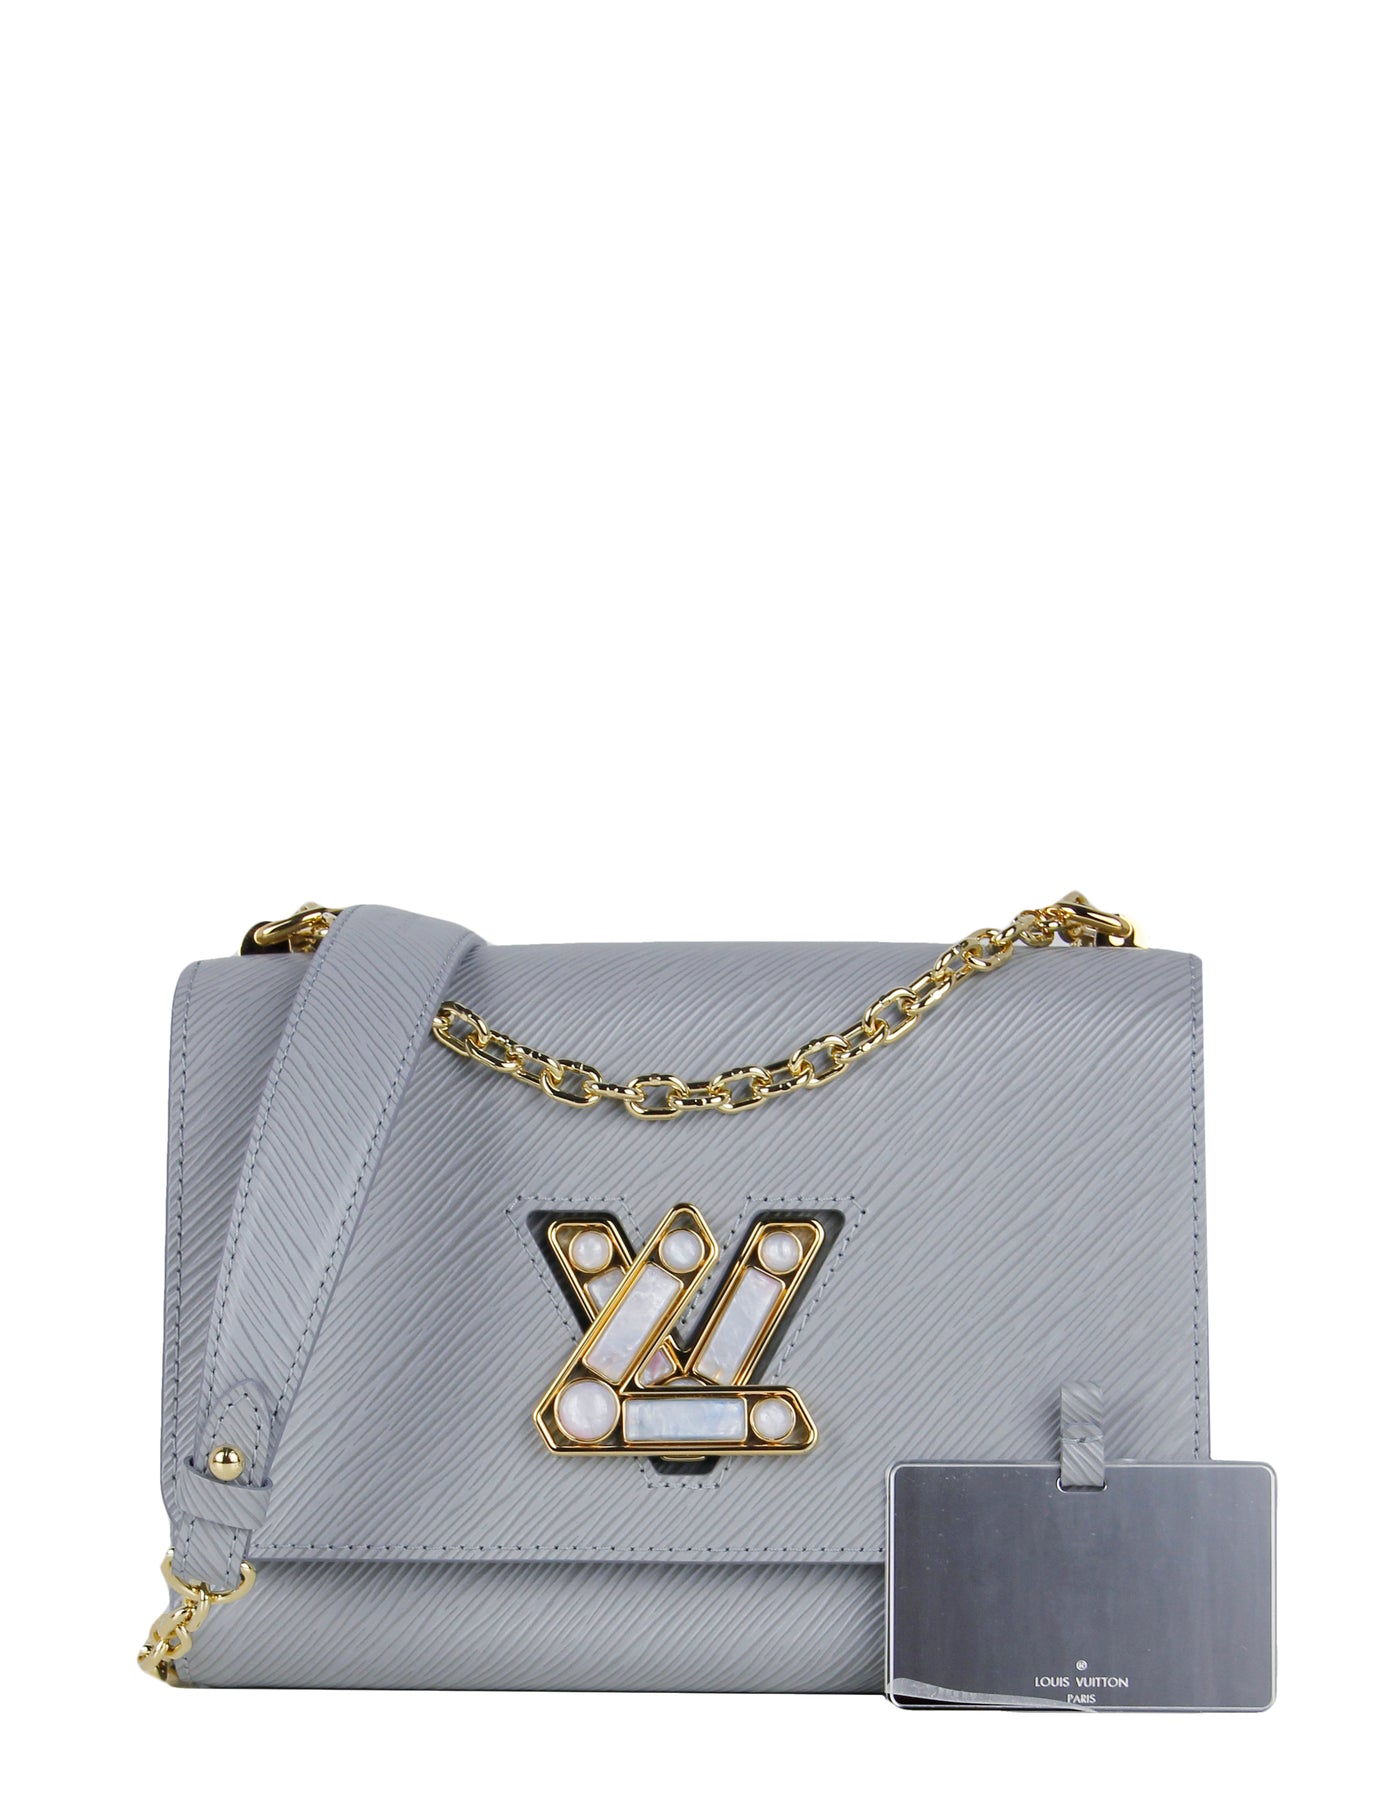 Louis Vuitton, Jewelry, Soldlouis Vuitton Epi Leather Lv Twist Bracelet